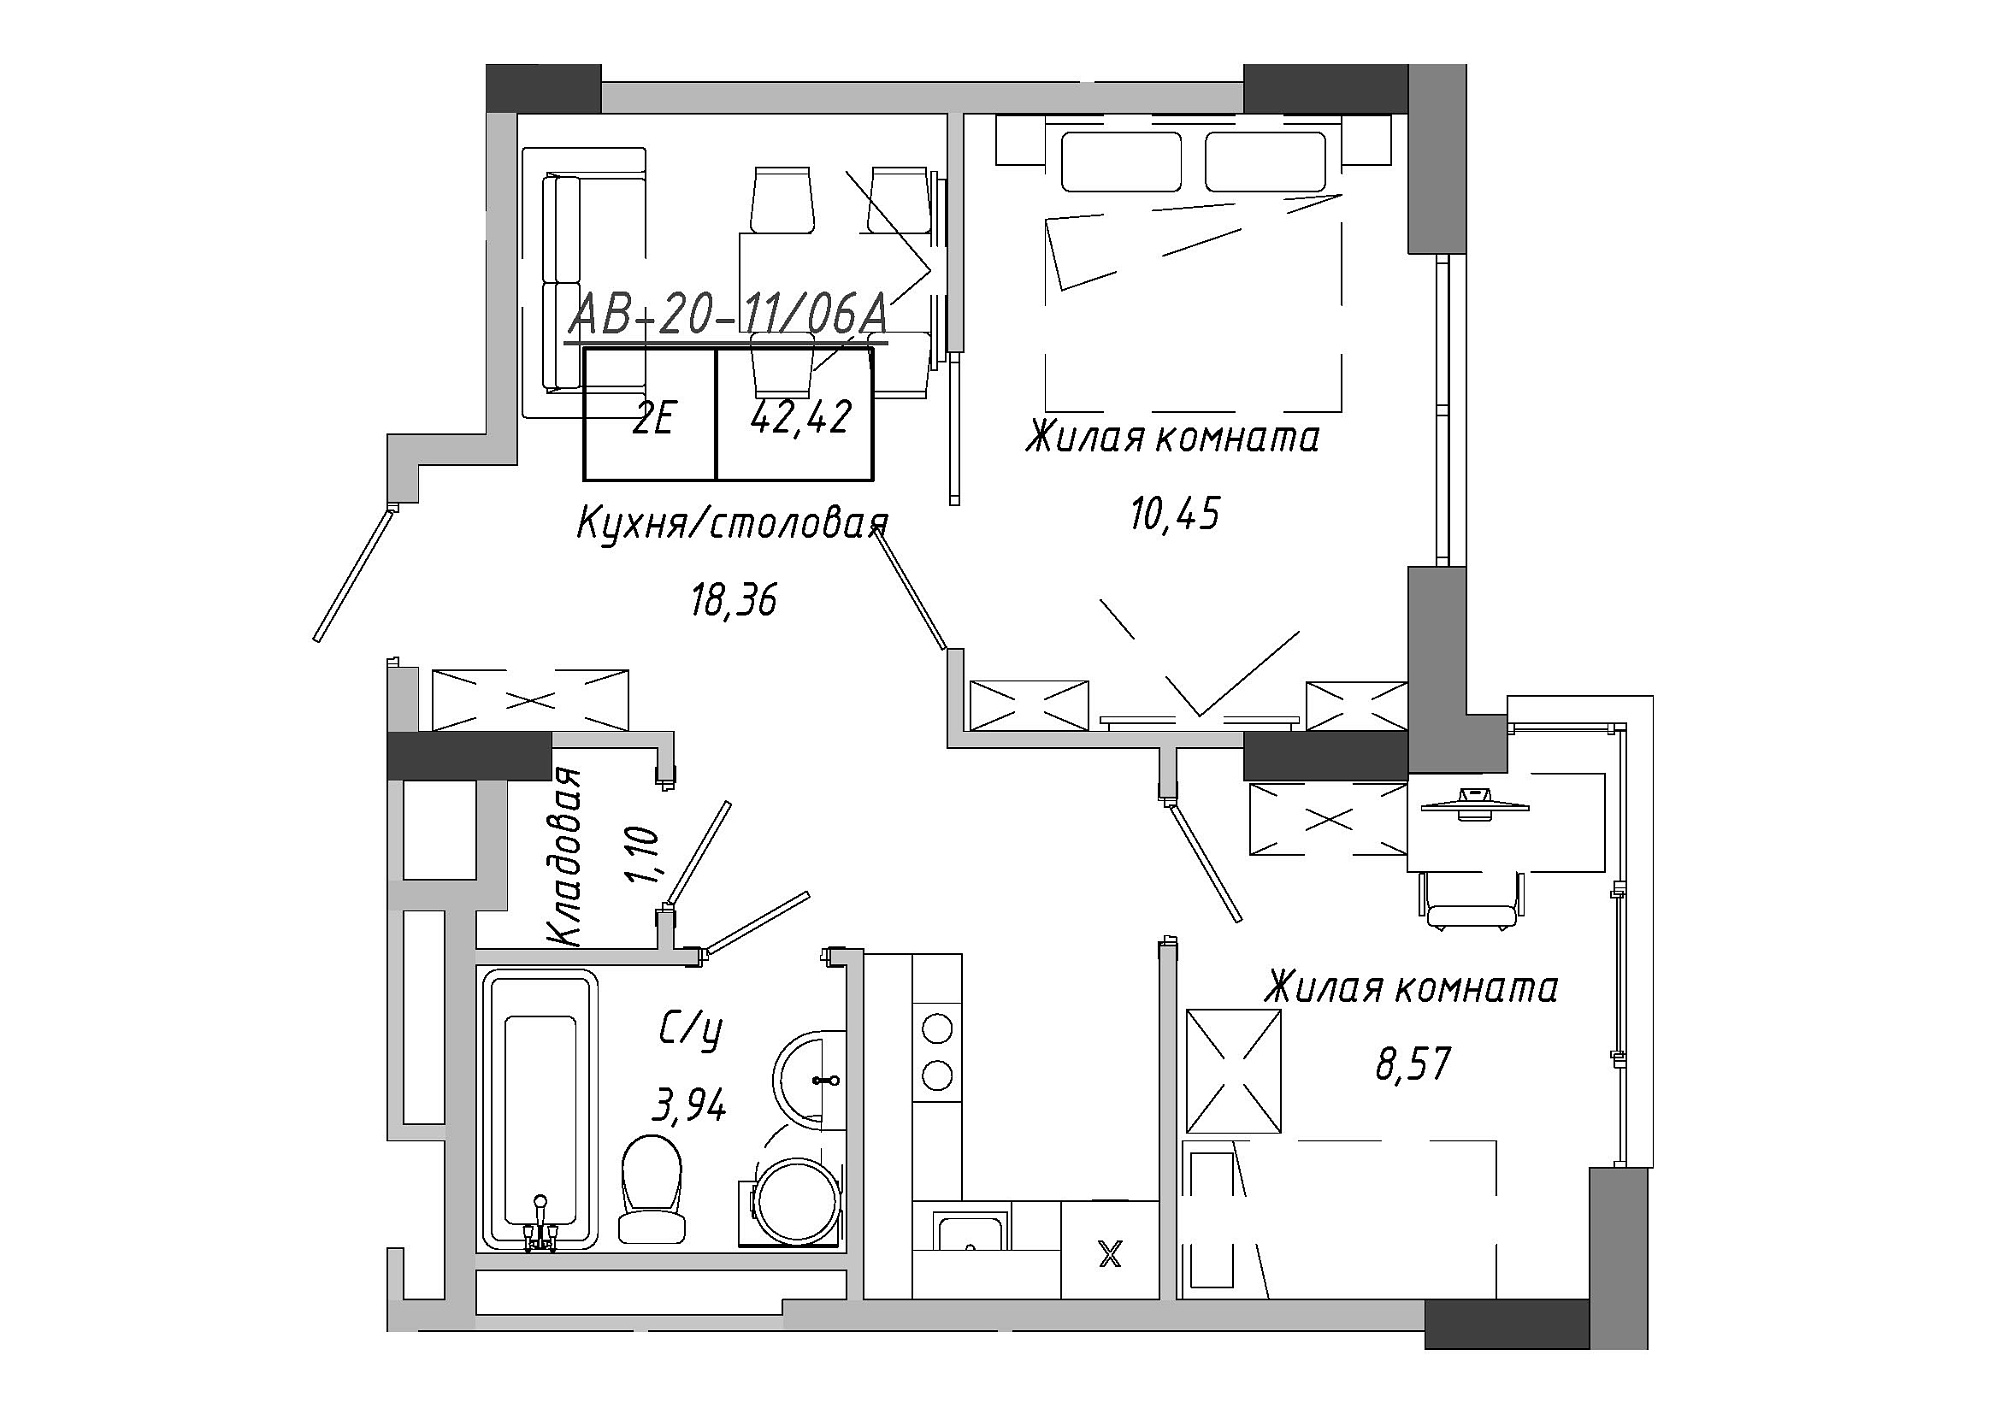 Планування 2-к квартира площею 42.85м2, AB-20-11/0006а.